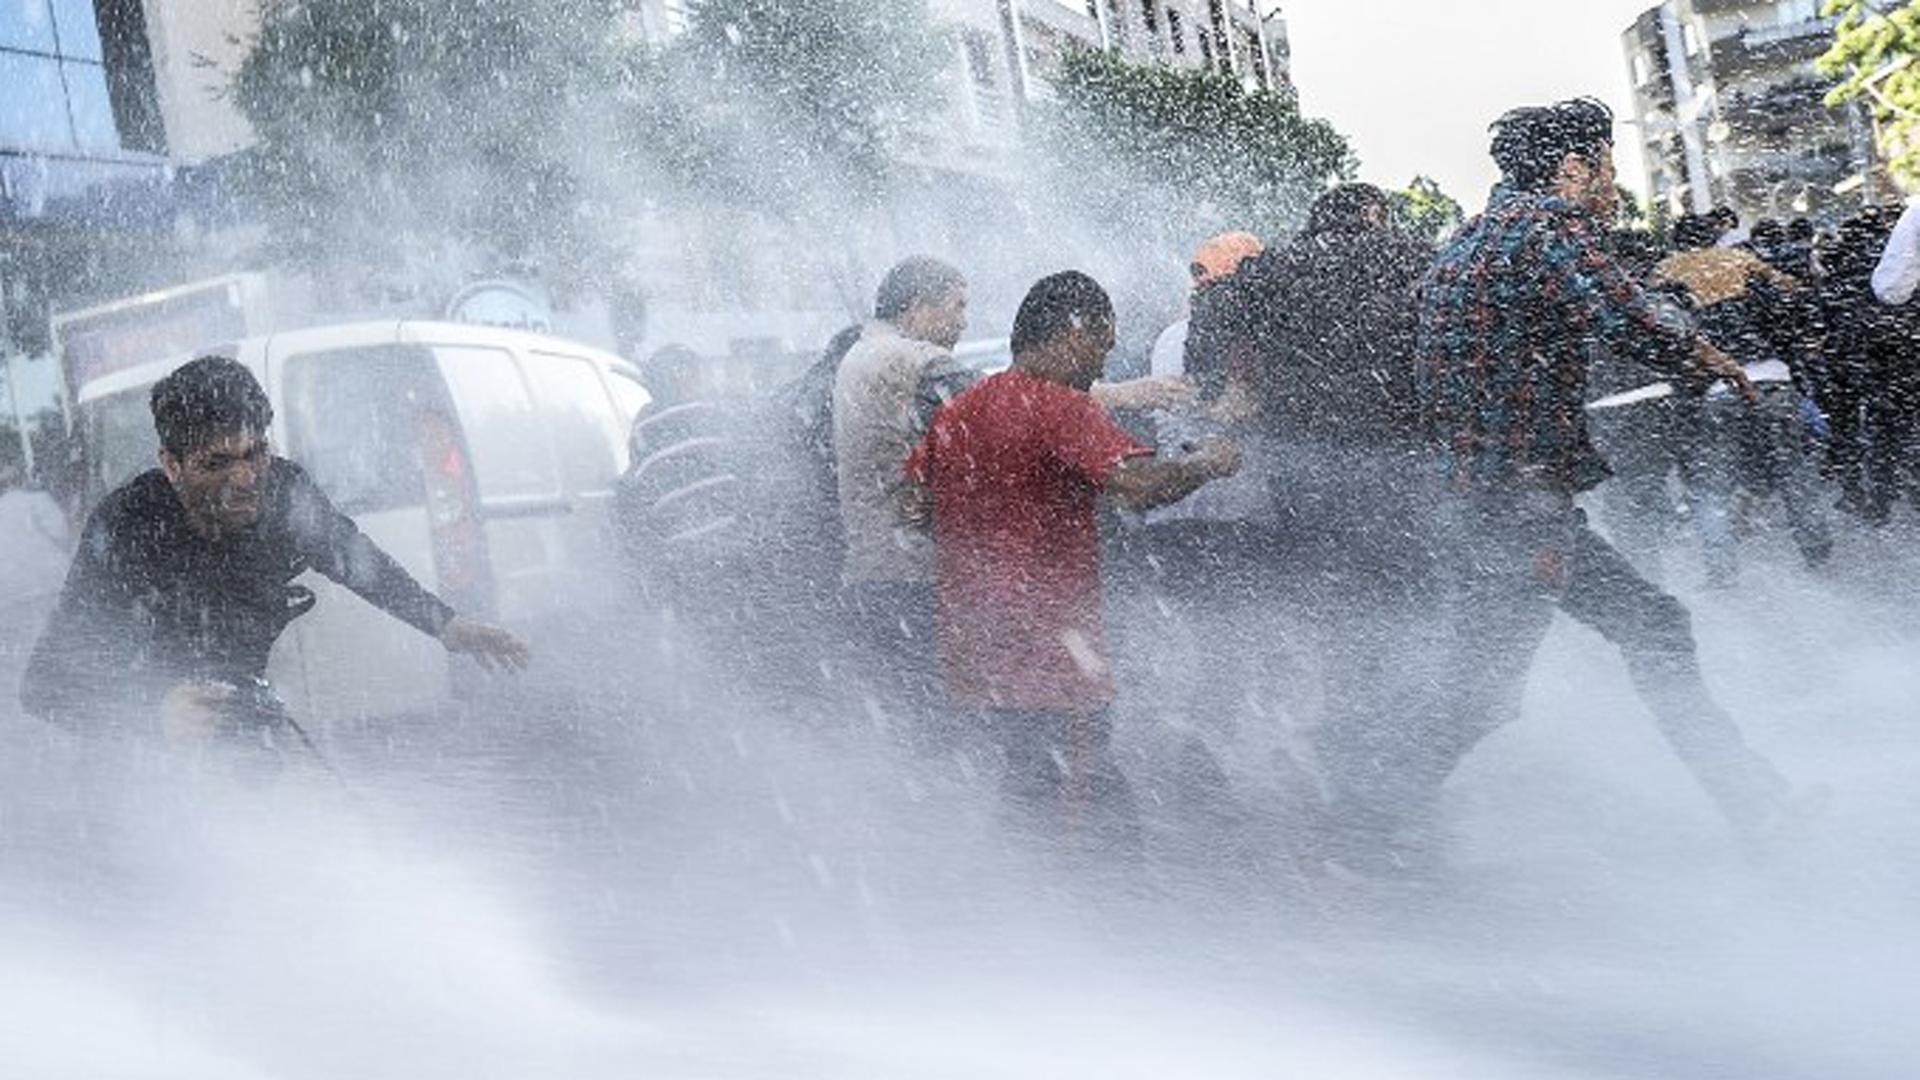 Wasserwerfer werden gegen Demonstranten eingesetzt.